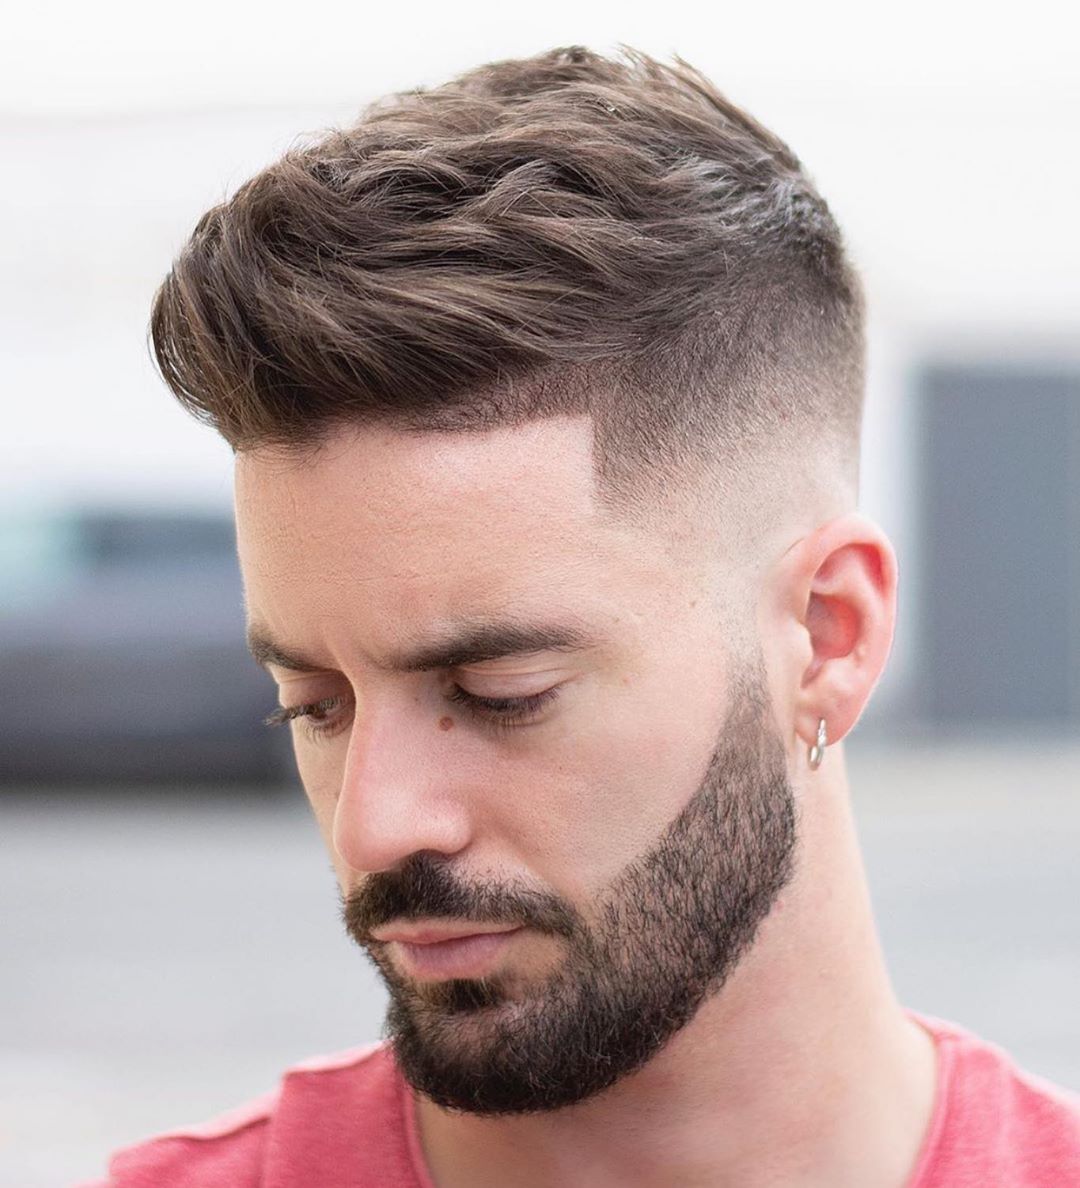 modelos de cortes de cabello para hombres 2020